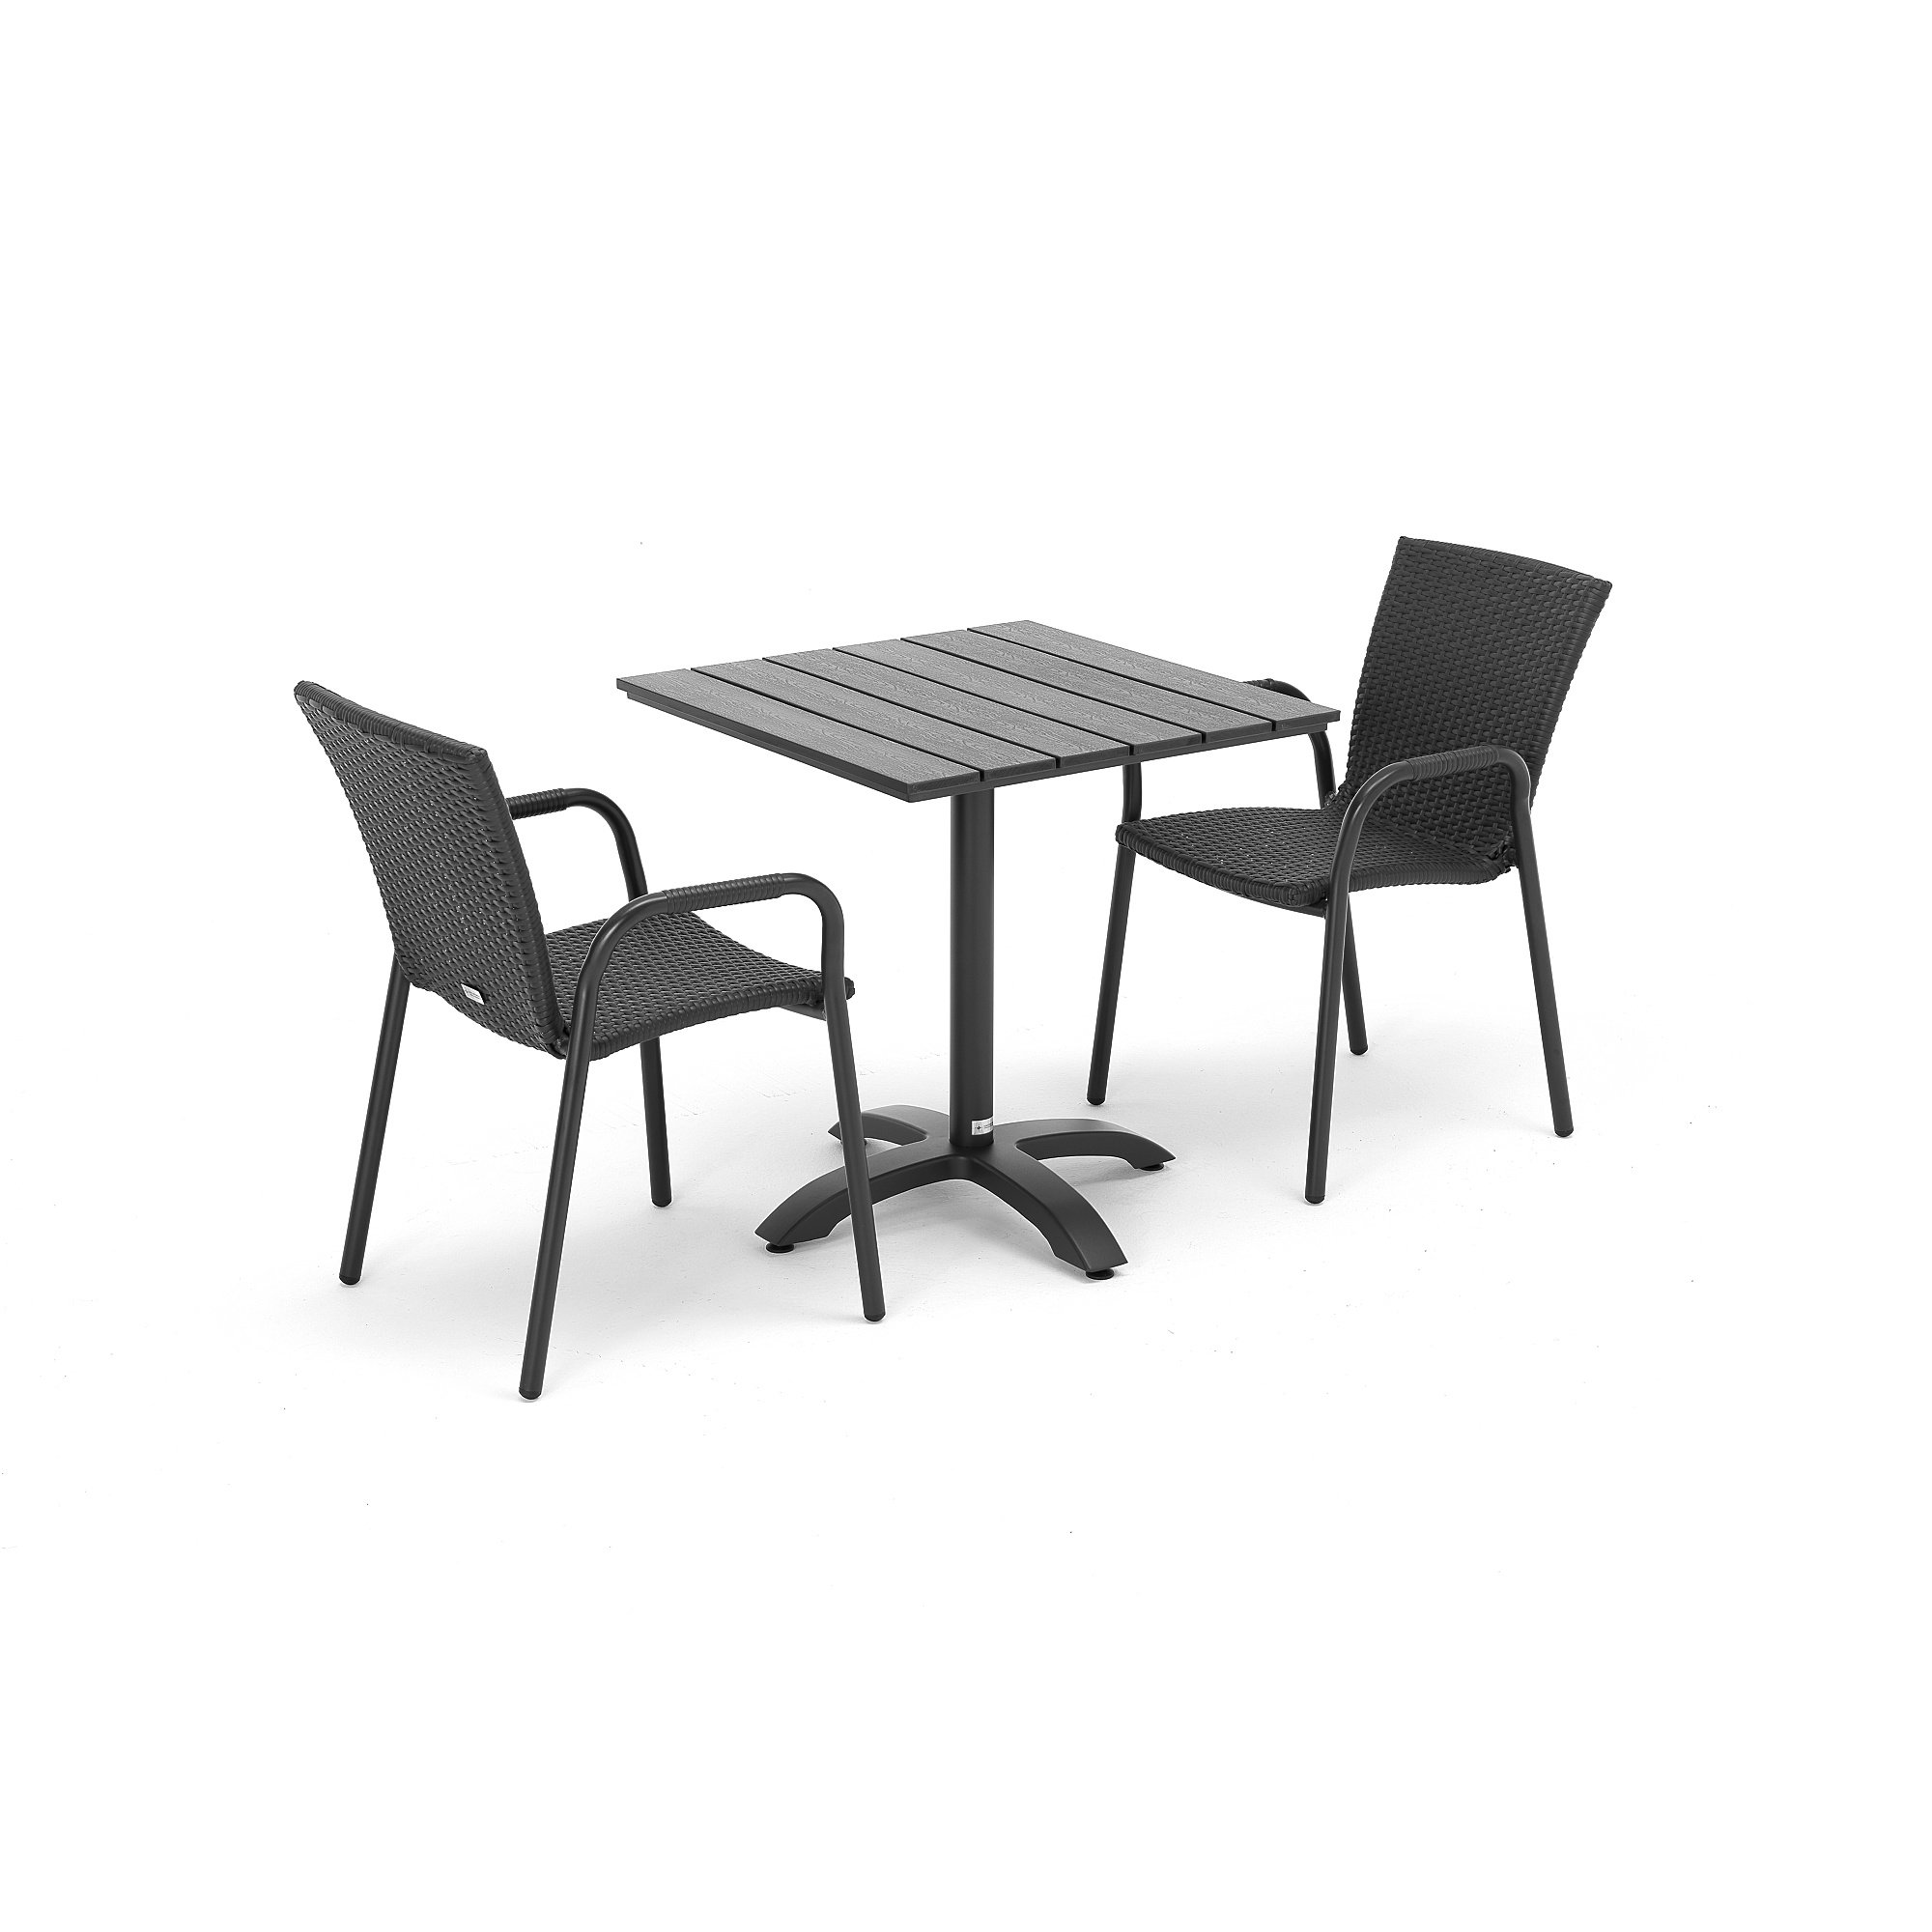 Zostava nábytku: Stôl Piazza + 2 ratanové stoličky Vienna, čierne